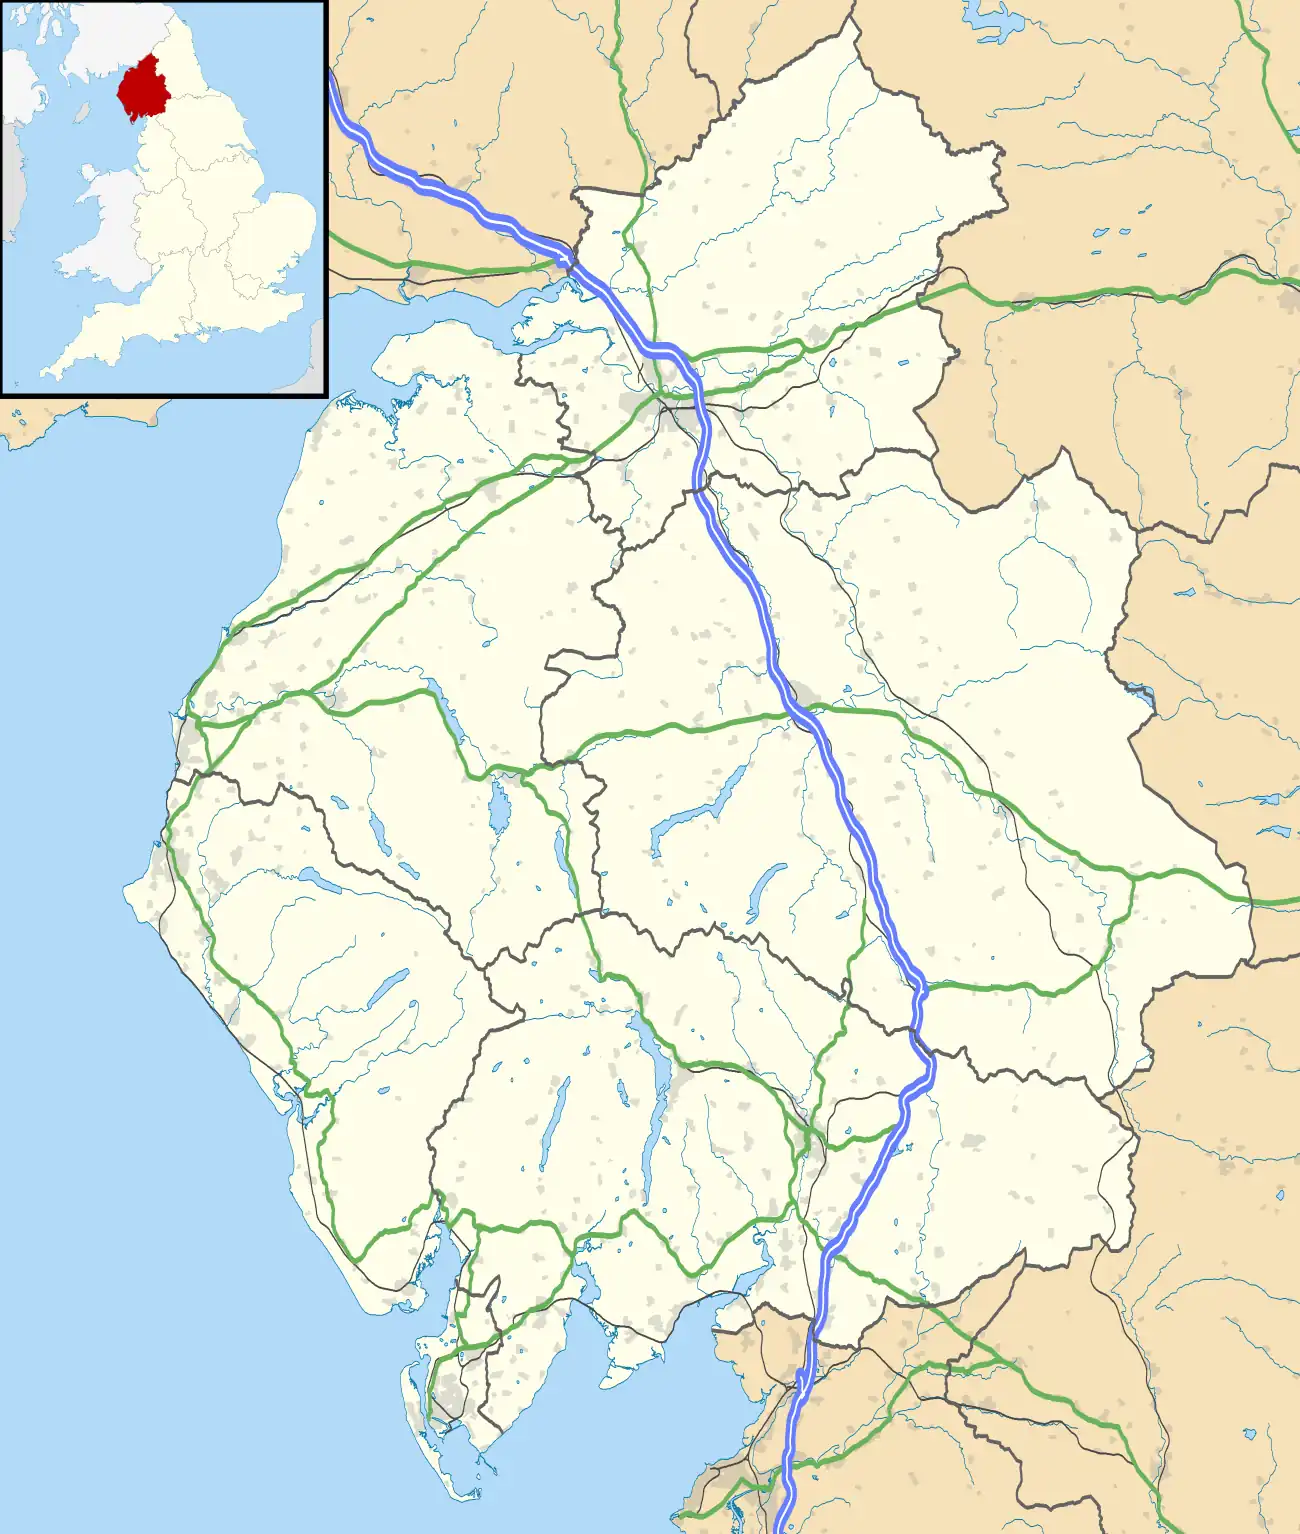 Hayton is located in Cumbria